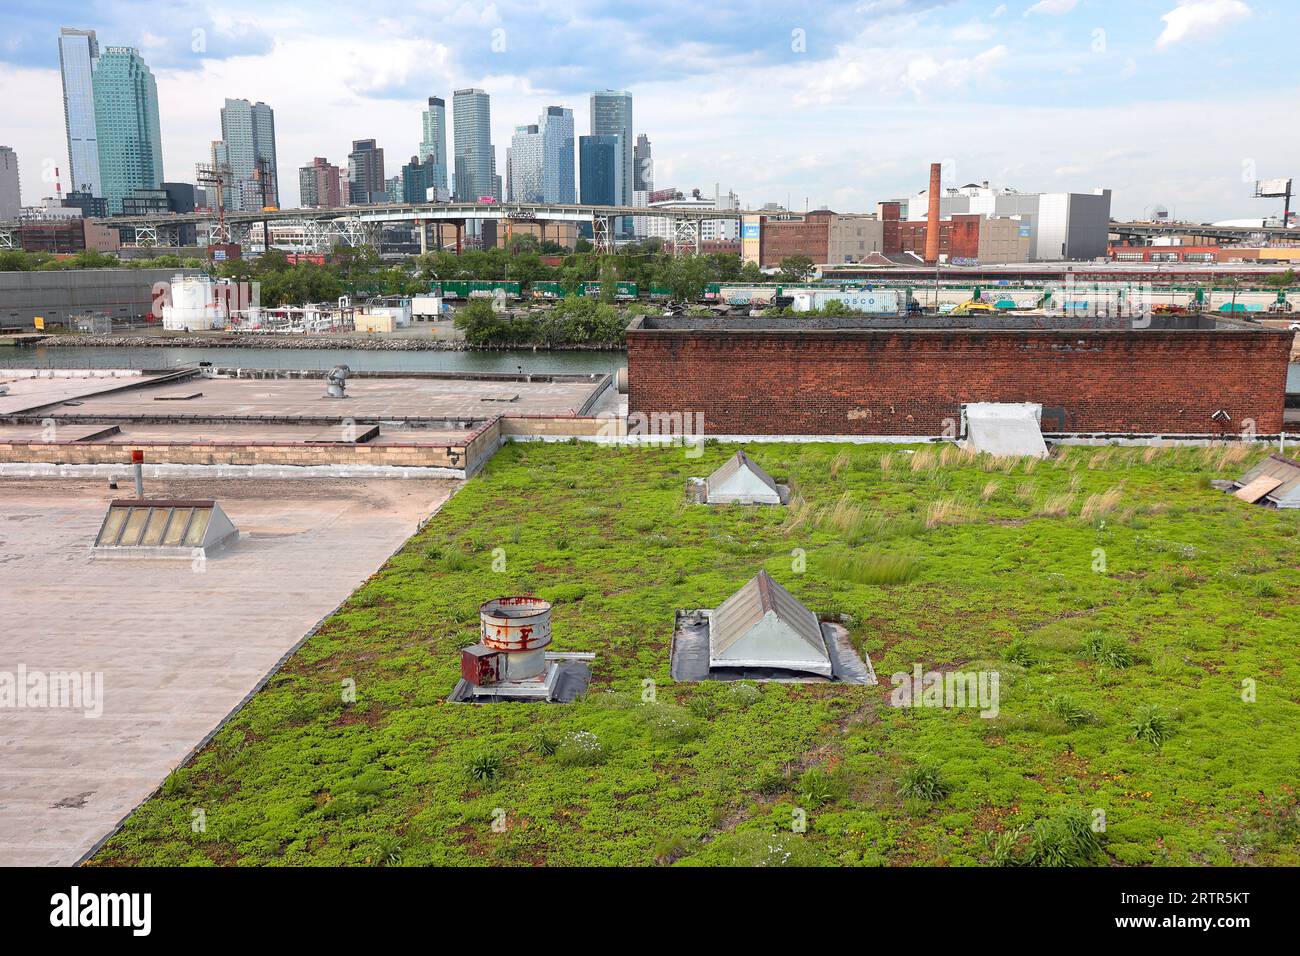 Un tetto verde su un edificio a Greenpoint, Brooklyn, guardando a nord verso Long Island City. I tetti verdi contribuiscono a ridurre l'effetto dell'isola di calore urbano sulle città. Foto Stock